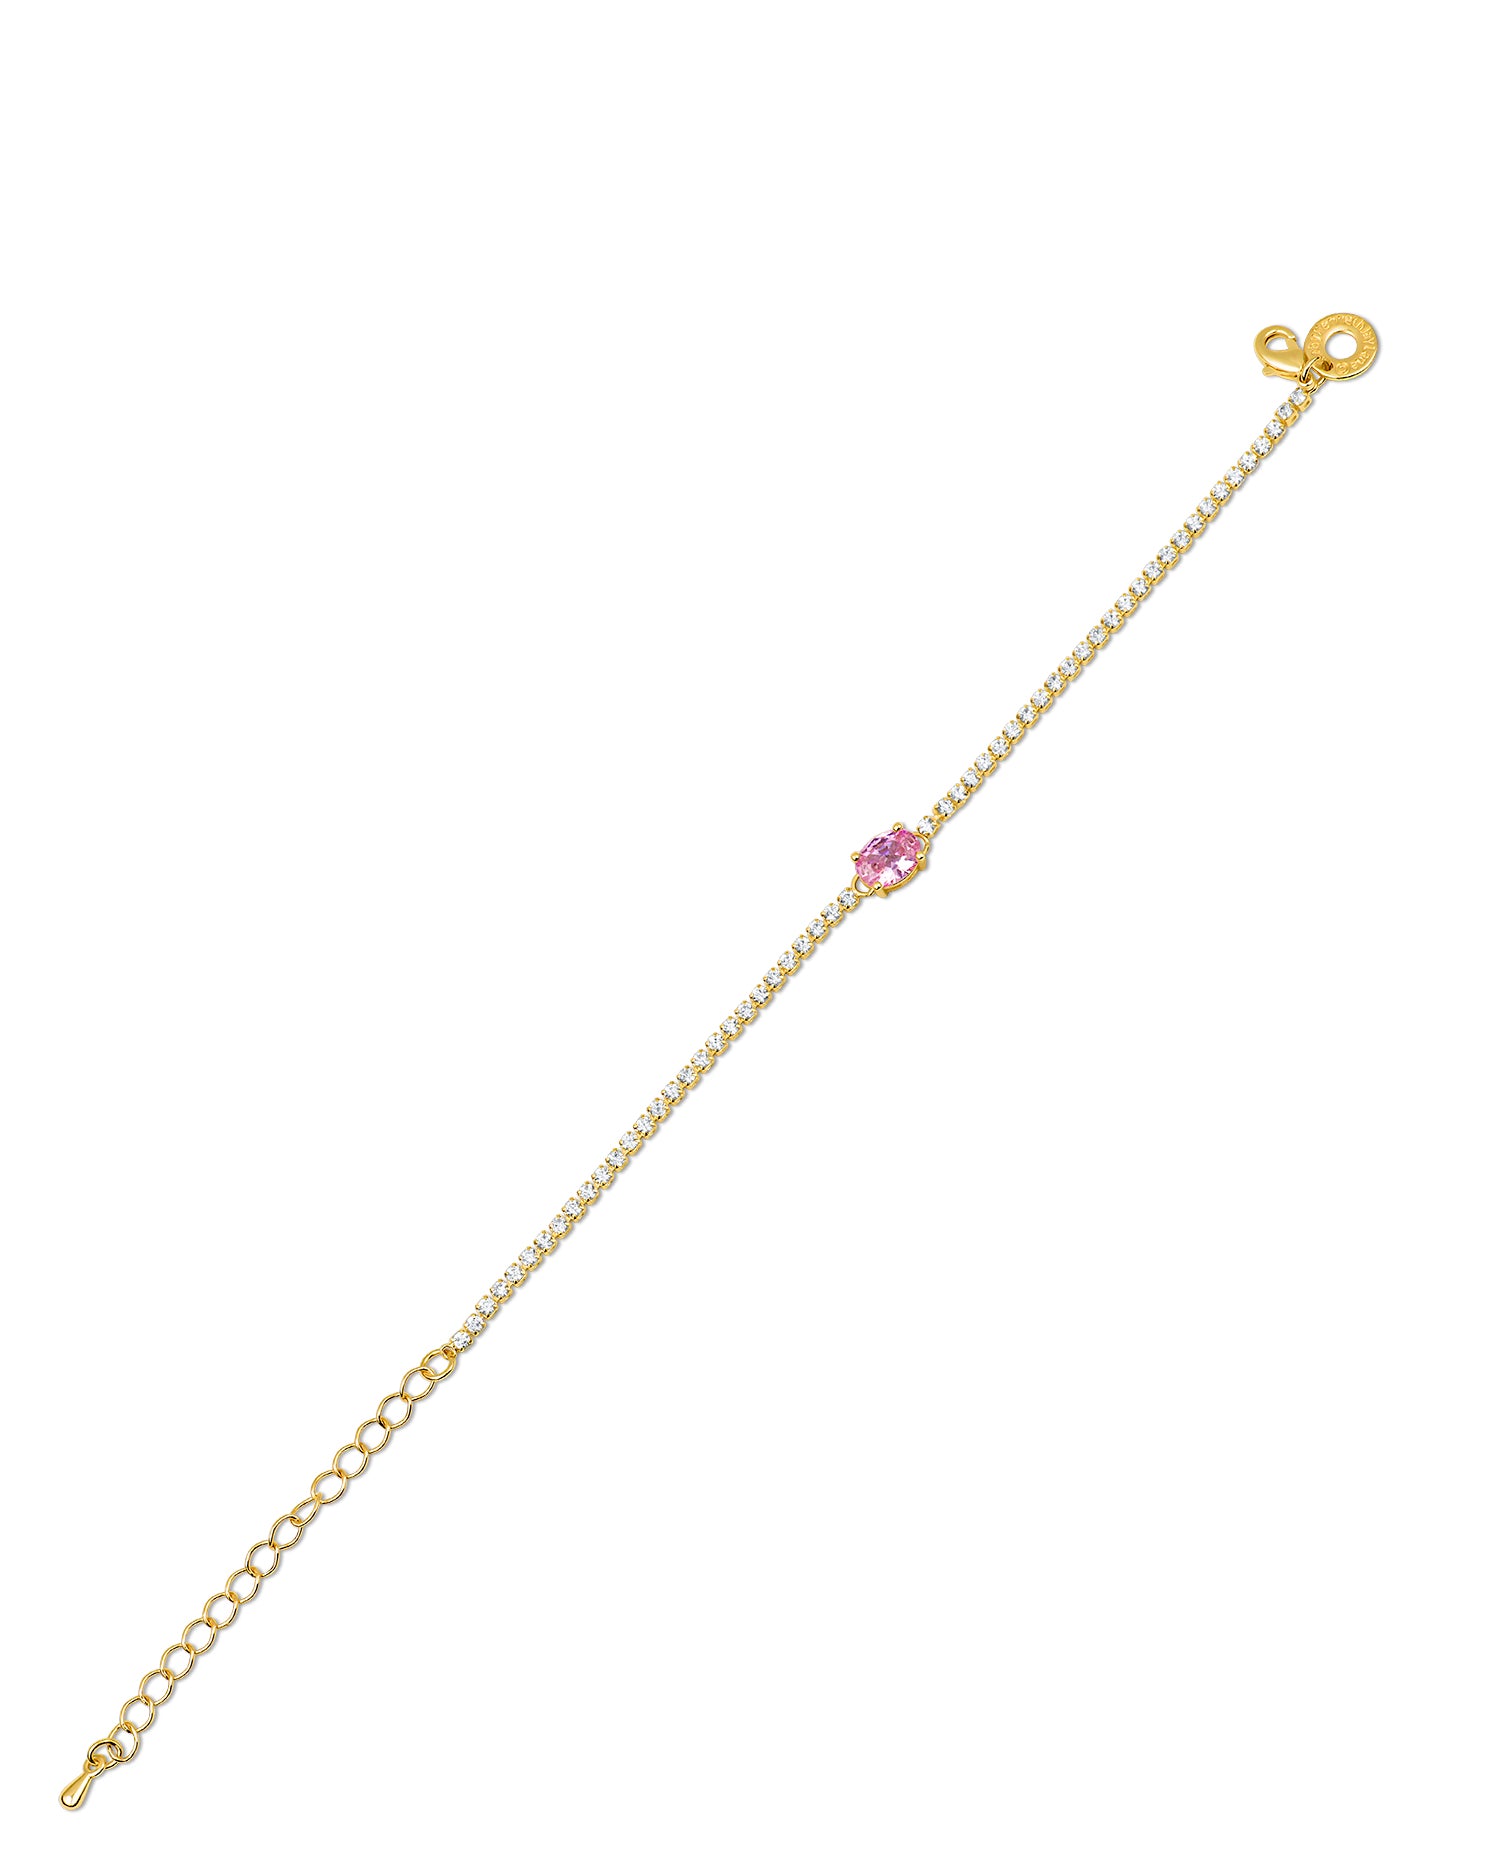 Oval Pink CZ Bracelet